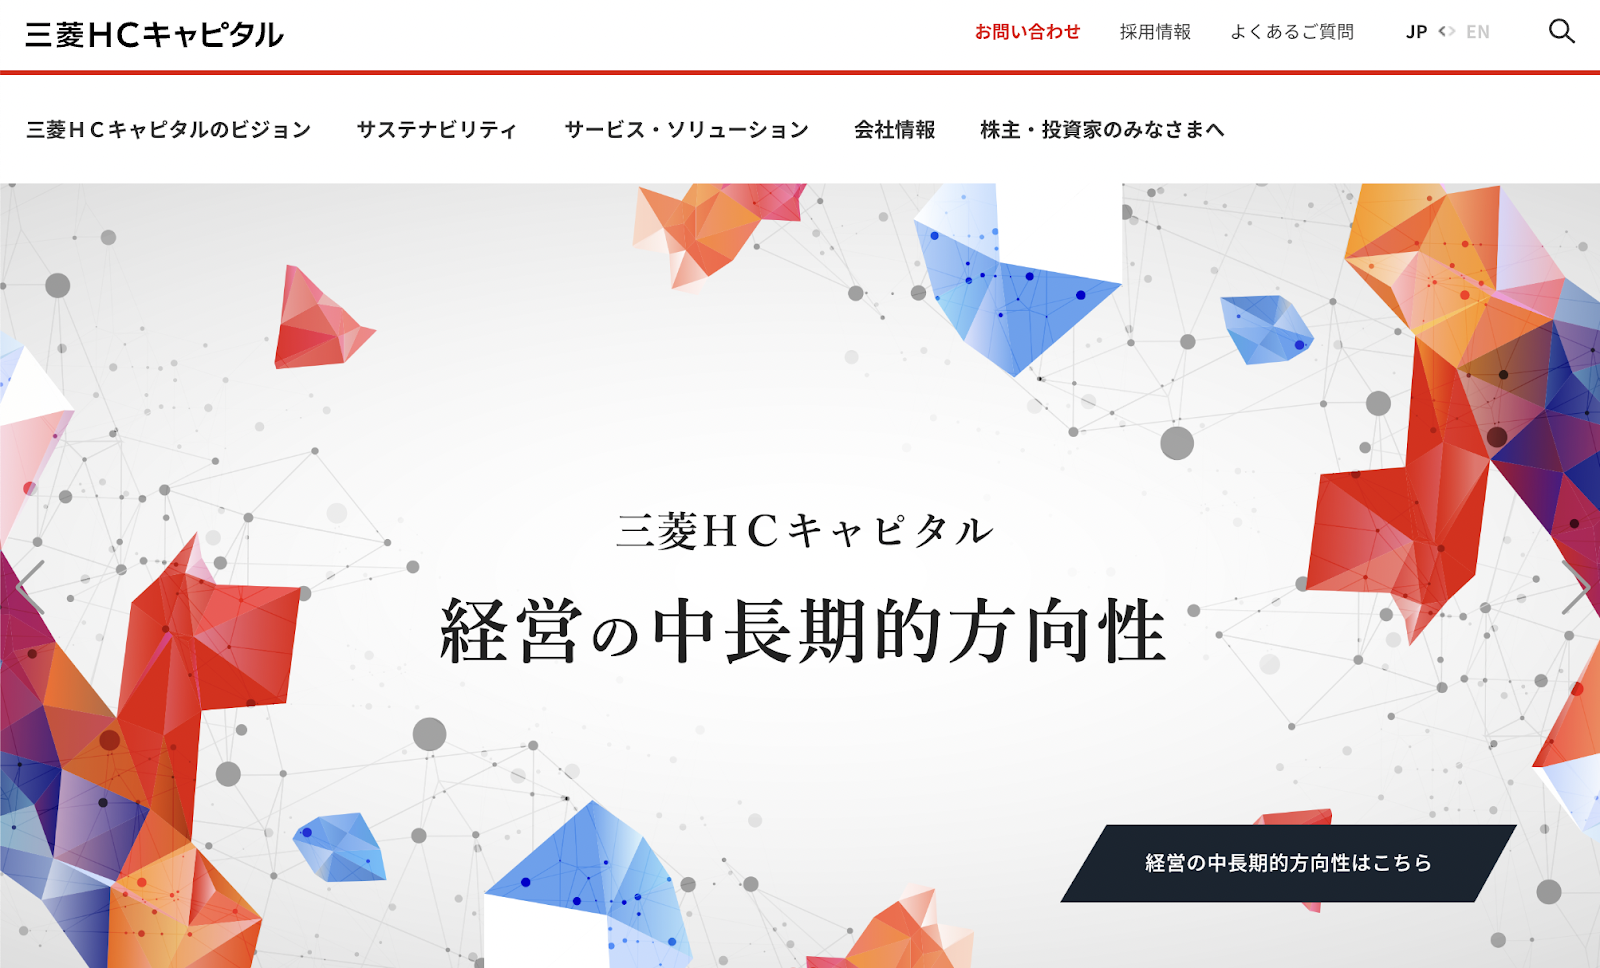 三菱HCキャピタル株式会社